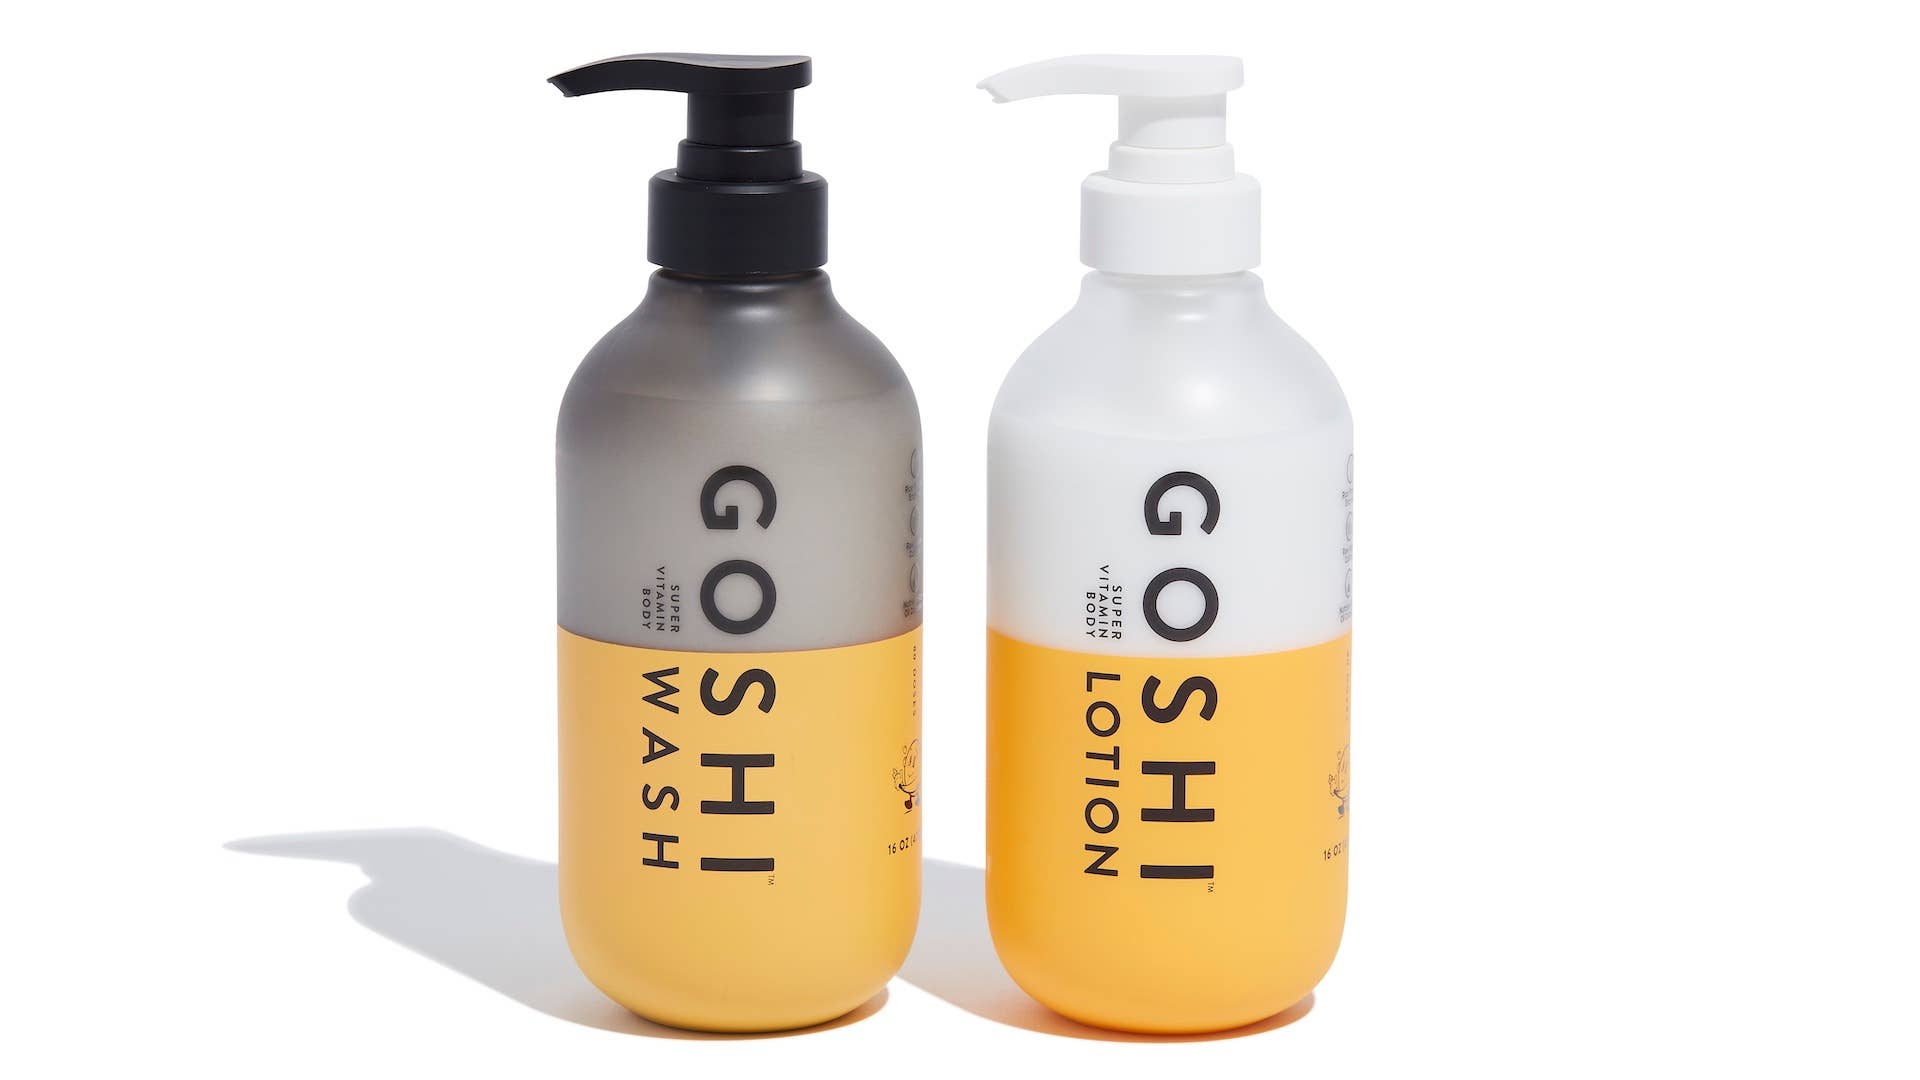 Product images of new Goshi lotion bodywash